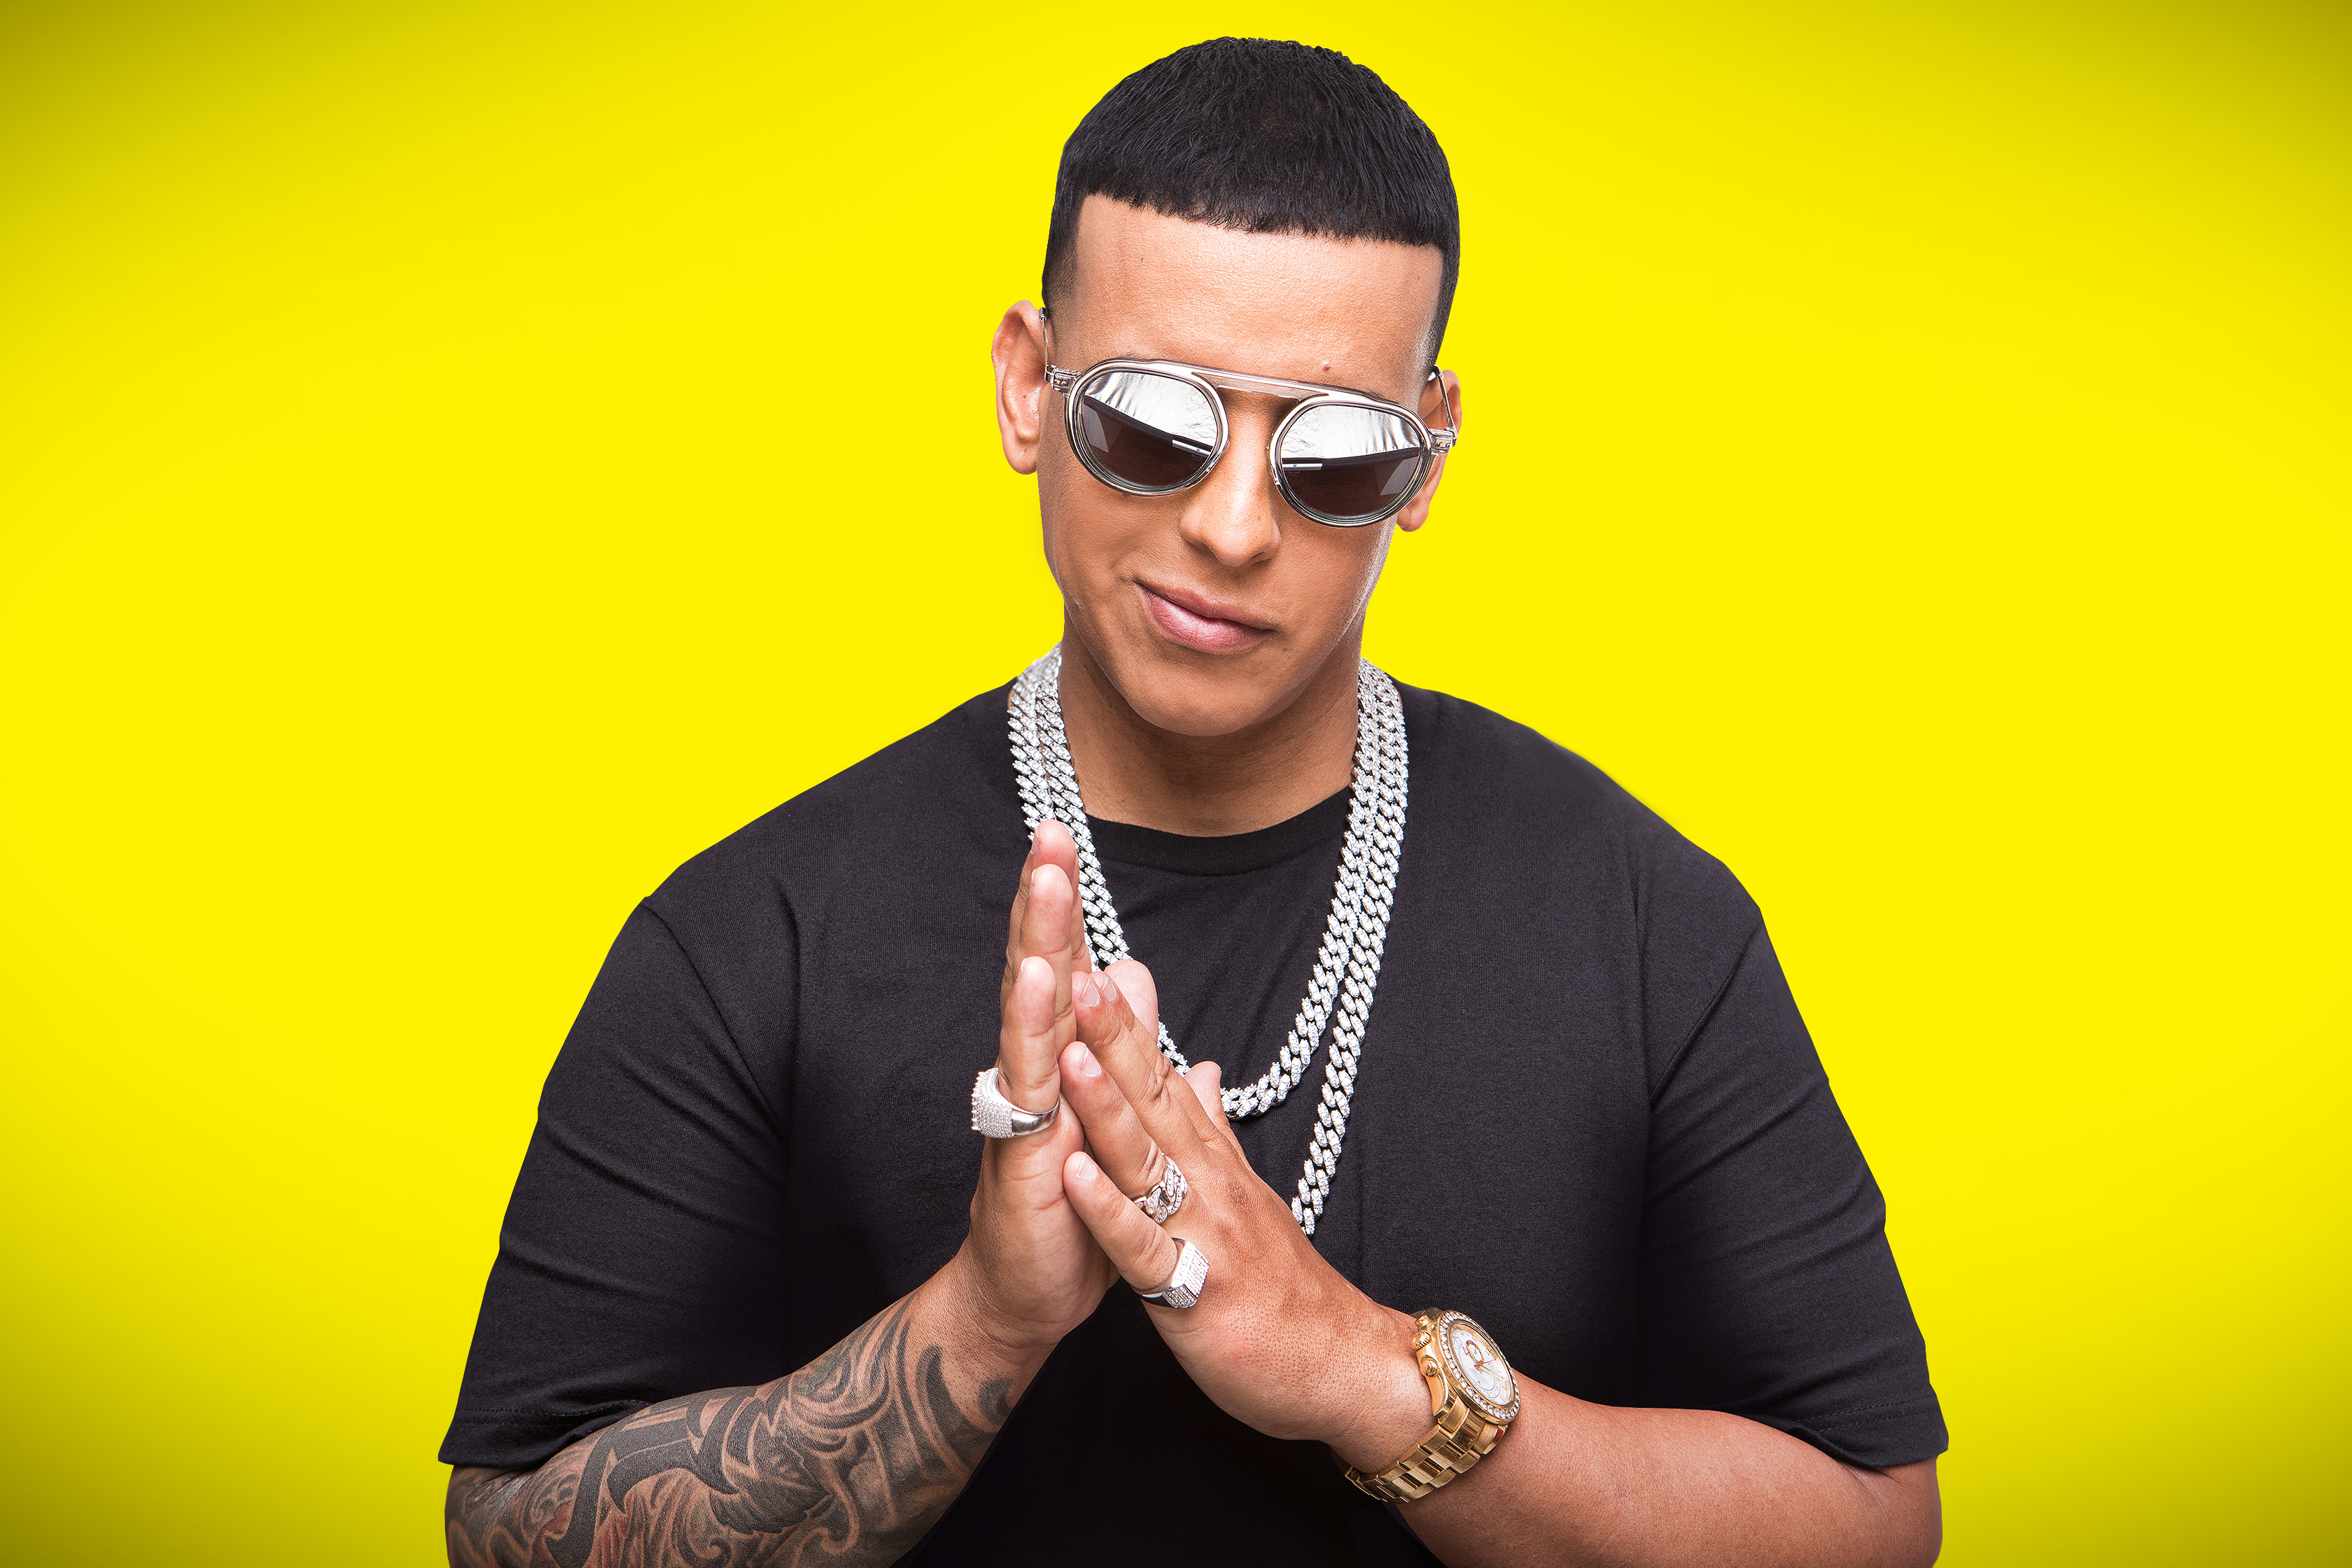 Urban Music Icon Daddy Yankee Joins Univision's “Reina de la Canción” as Executive Producer - TelevisaUnivision